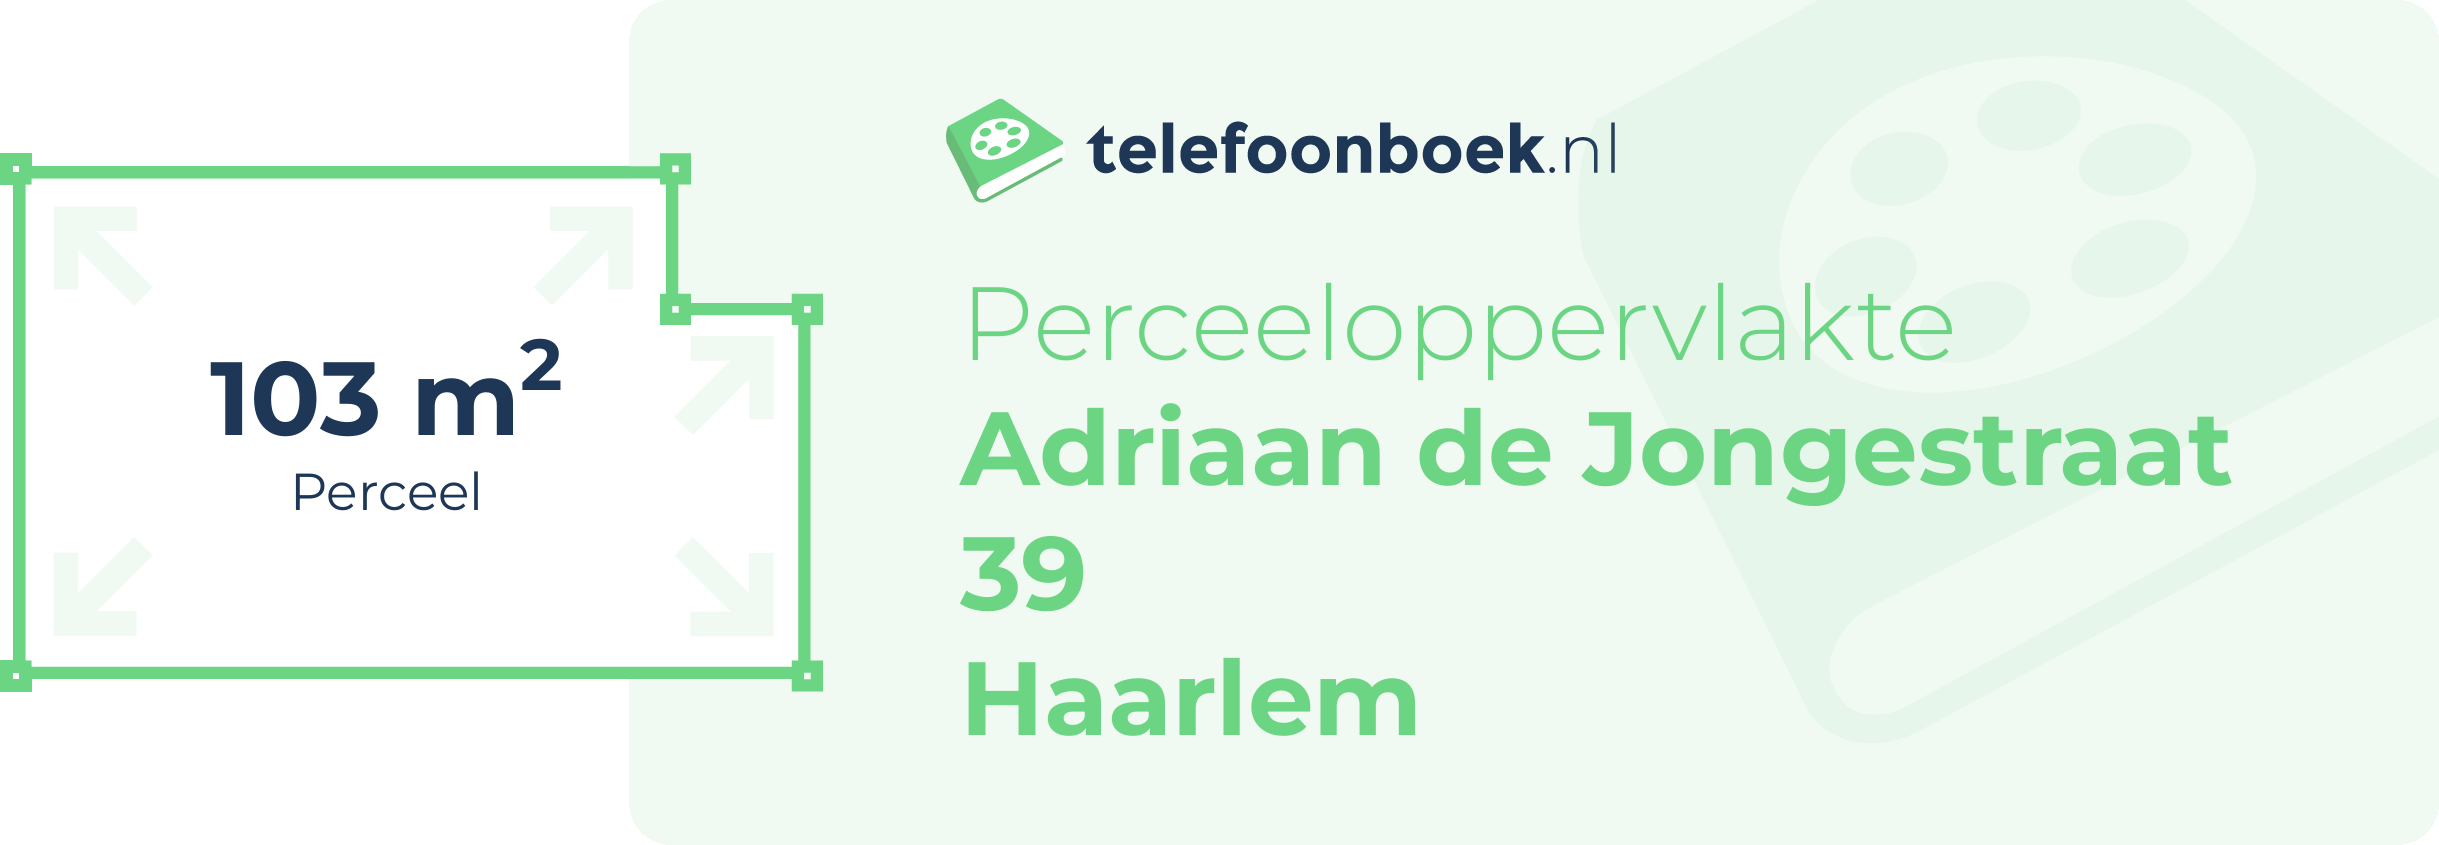 Perceeloppervlakte Adriaan De Jongestraat 39 Haarlem